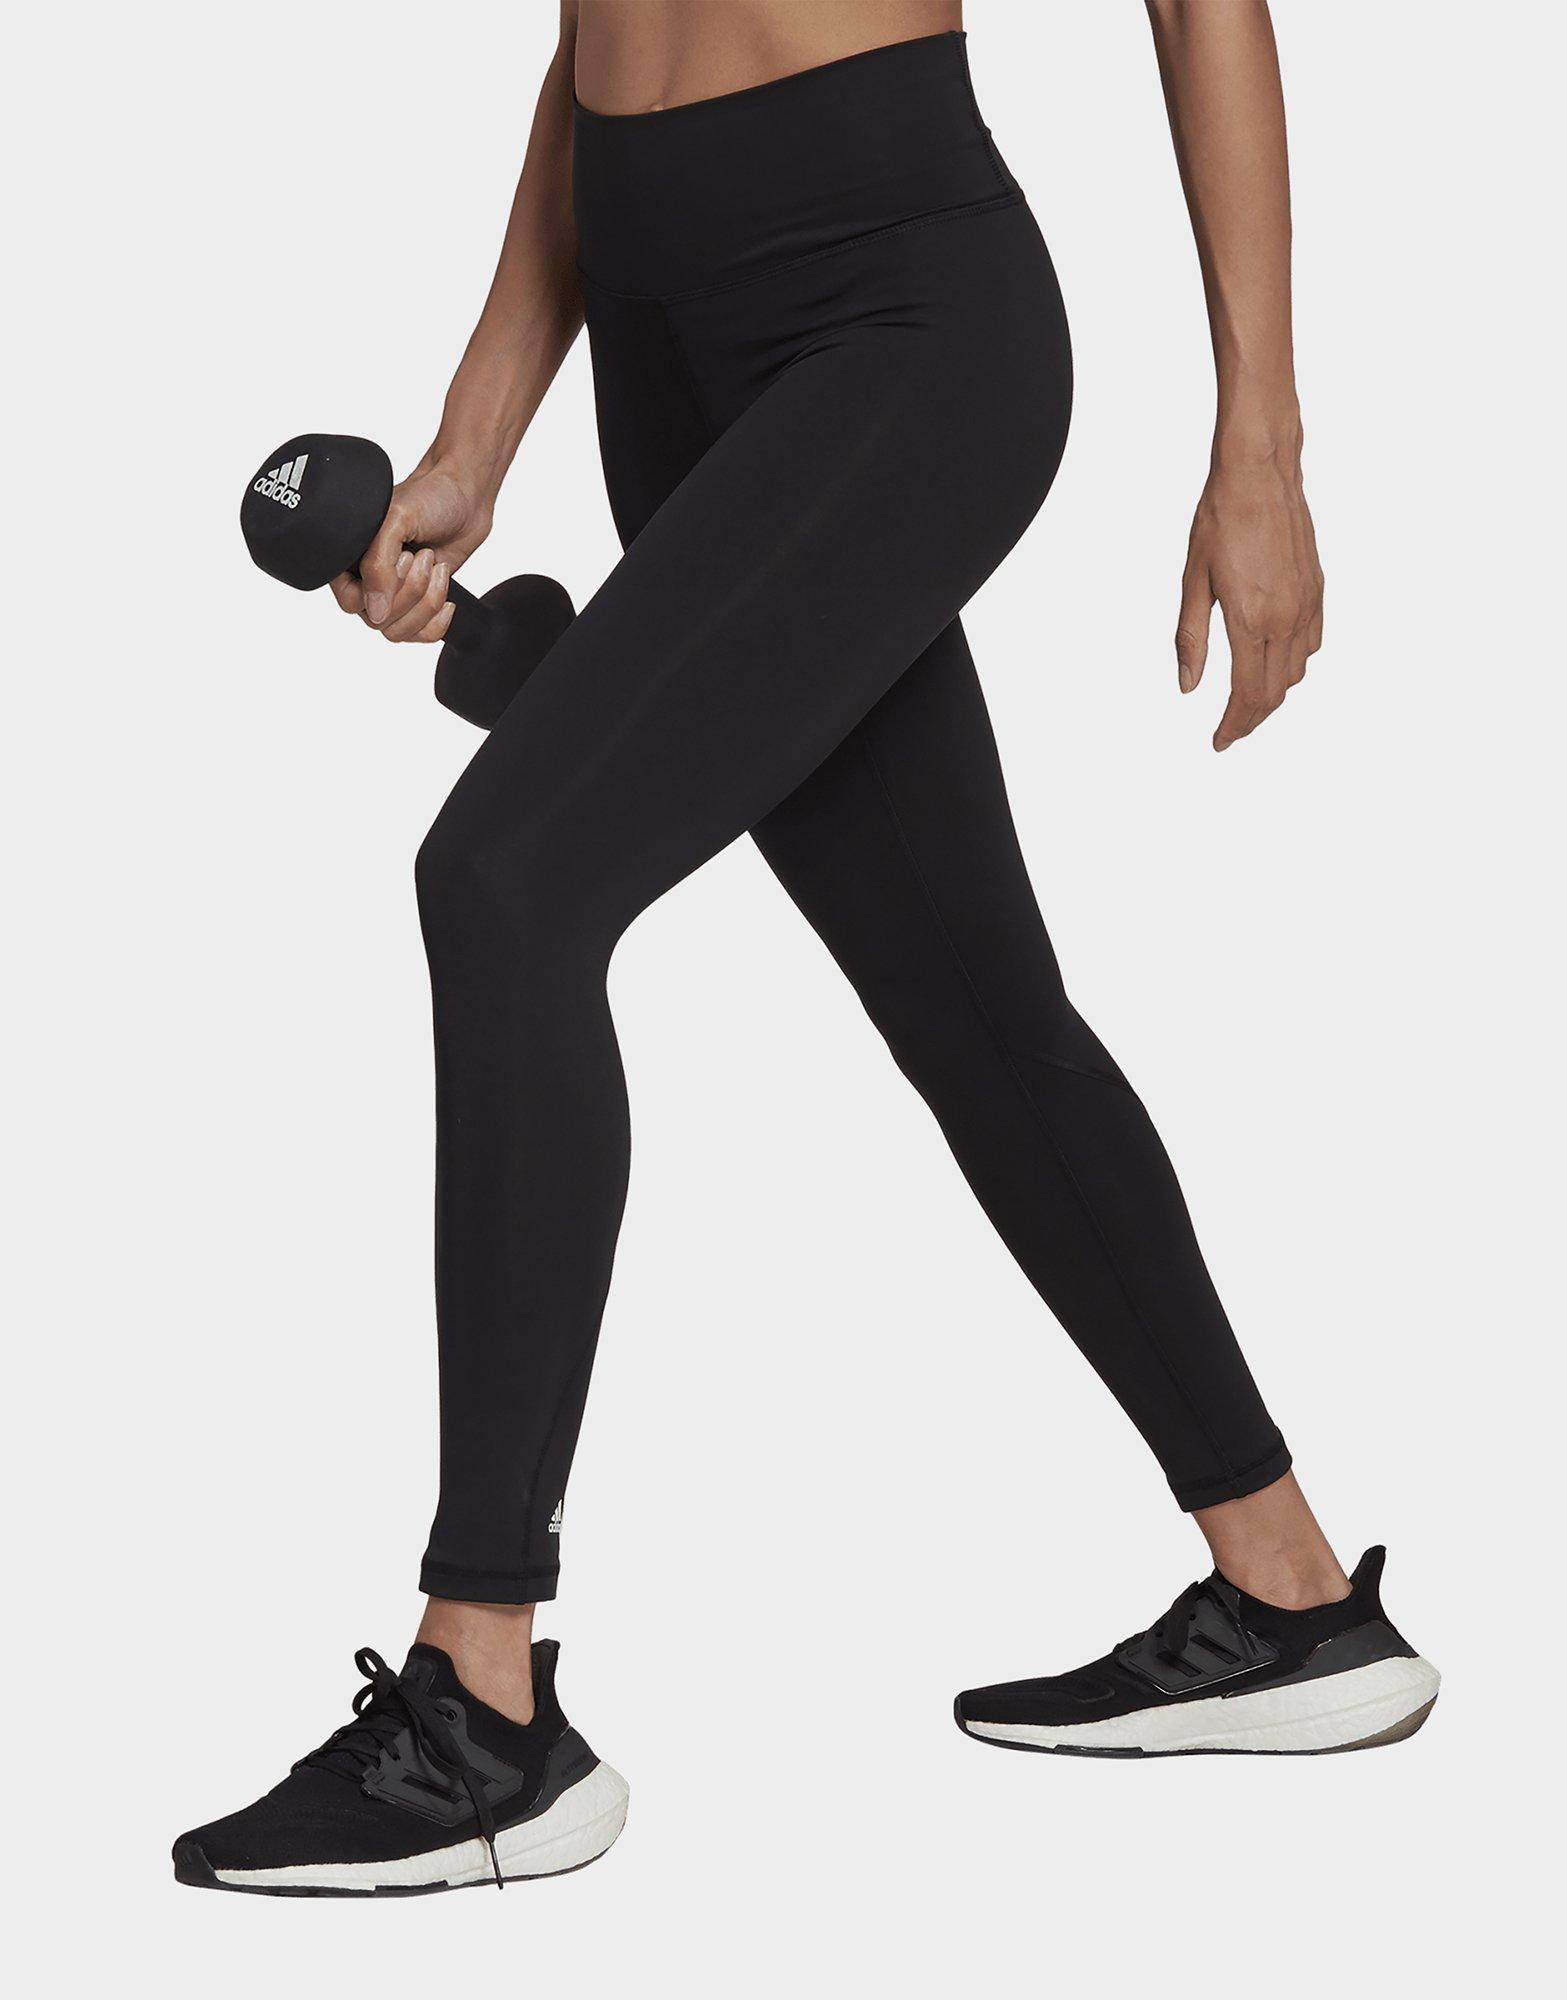 adidas Optime Full-Length Leggings - Black, Women's Training